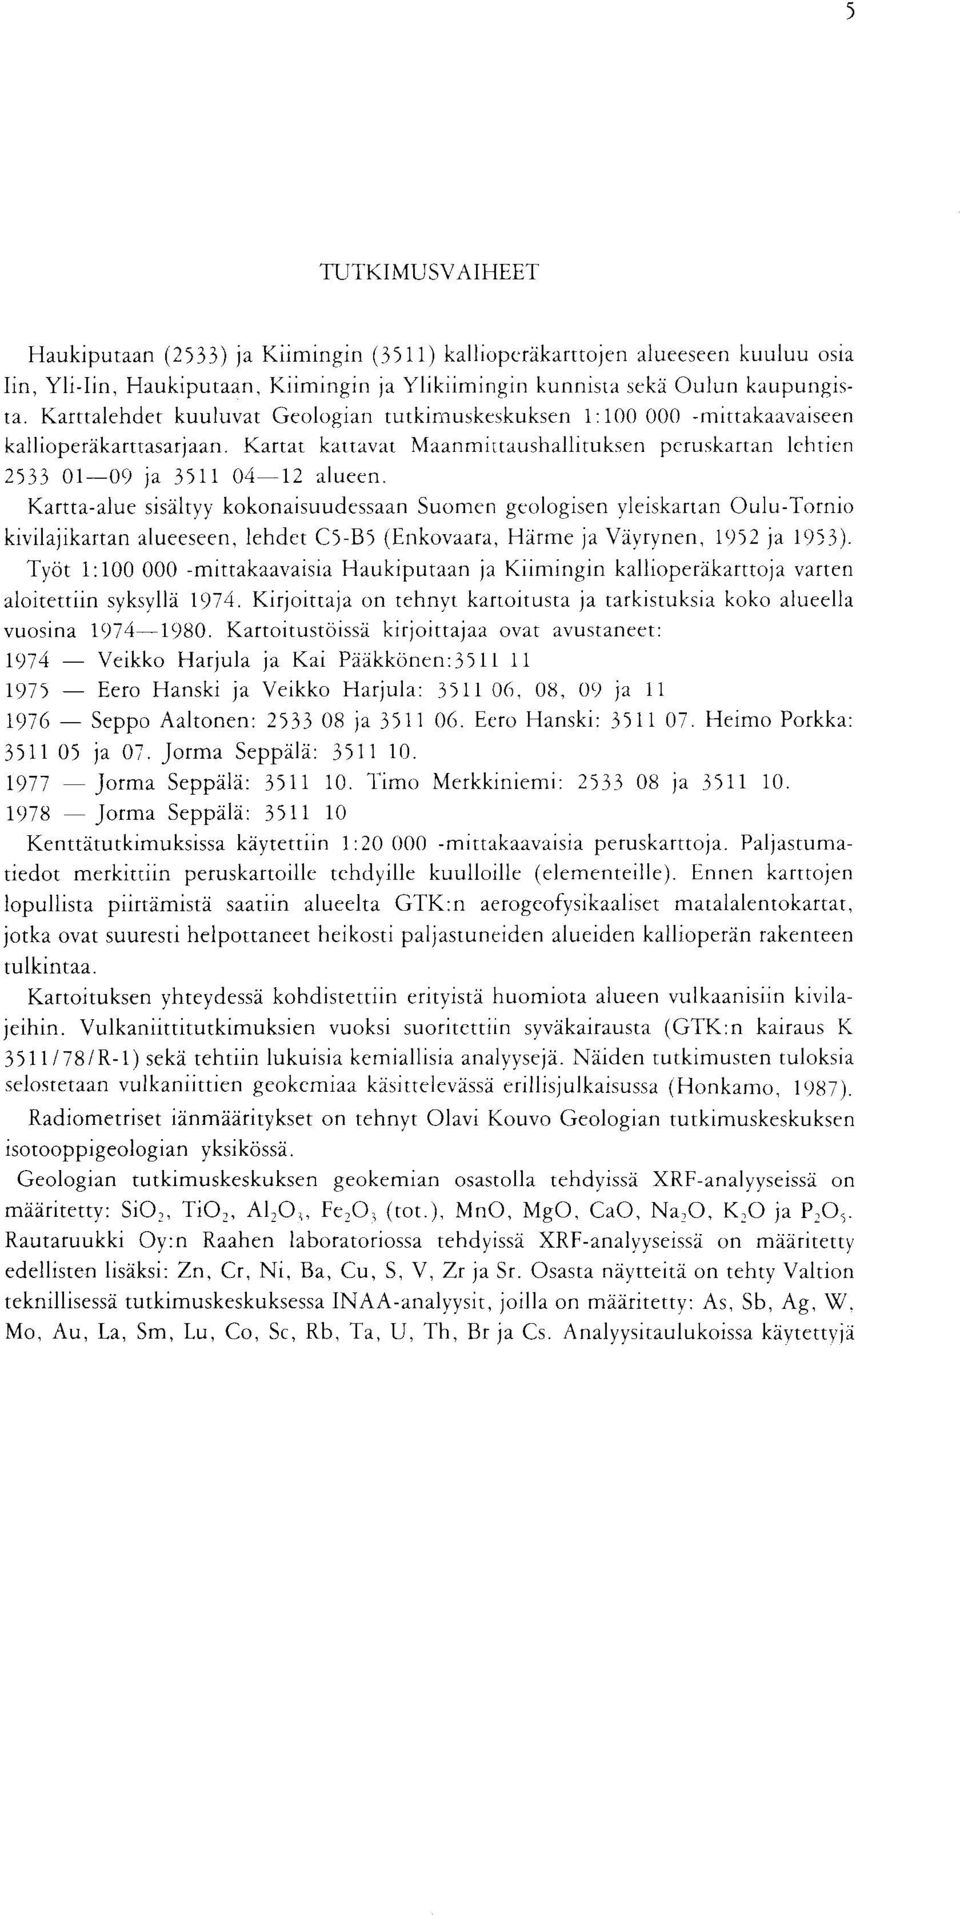 kokonaisuudessaan Suomen geologisen yleiskartan OuluTornio kivilajikartan alueeseen, lehdet C5B5 (Enkovaara, Harme ja Vayrynen, 1952 ja 1953) Tyot 1 :100 000 mittakaavaisia Haukiputaan ja Kiimingin